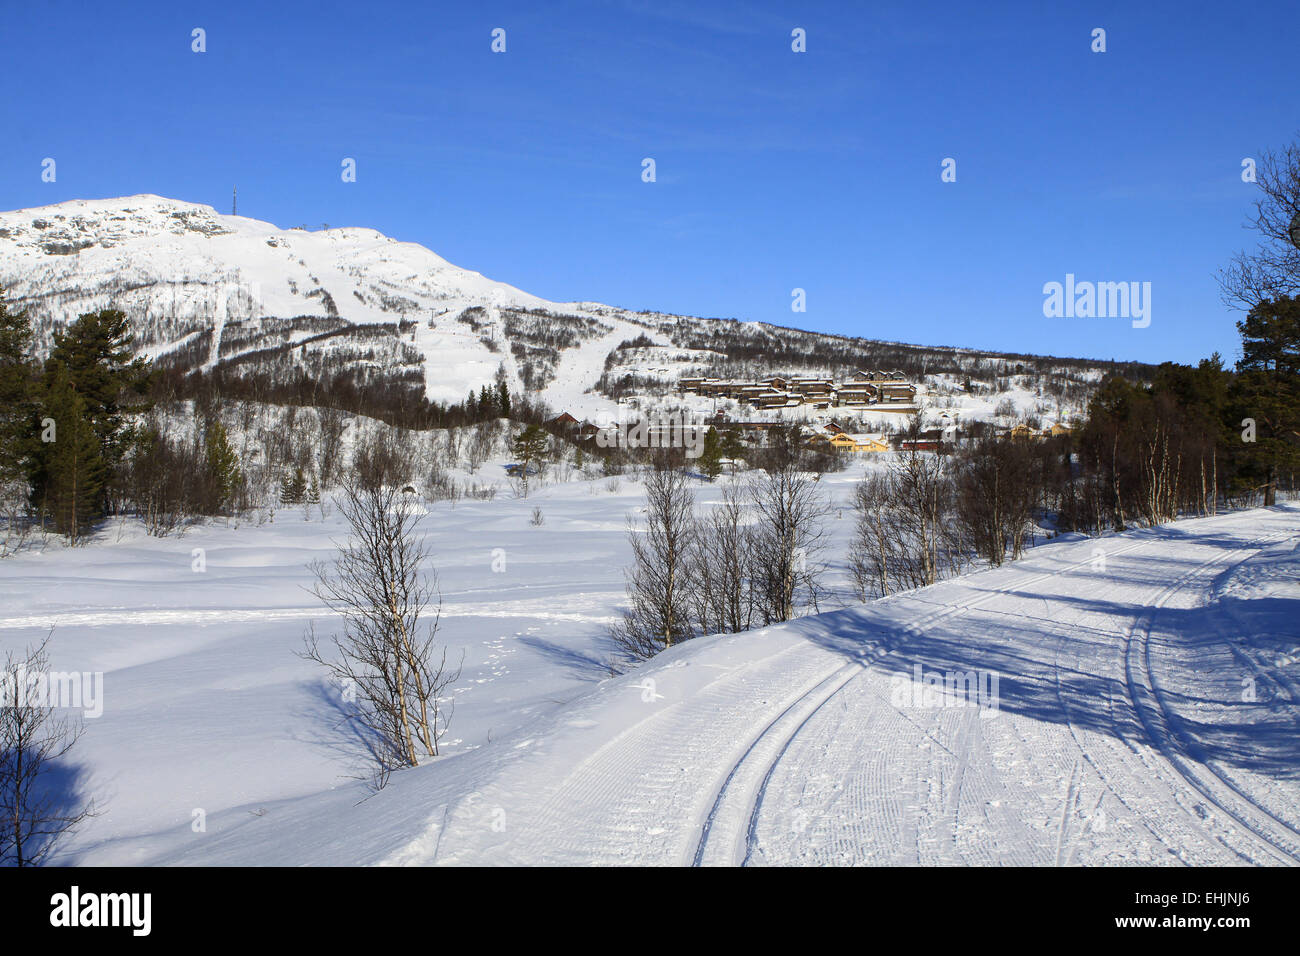 Les zones de sports d'hiver en Norvège Banque D'Images